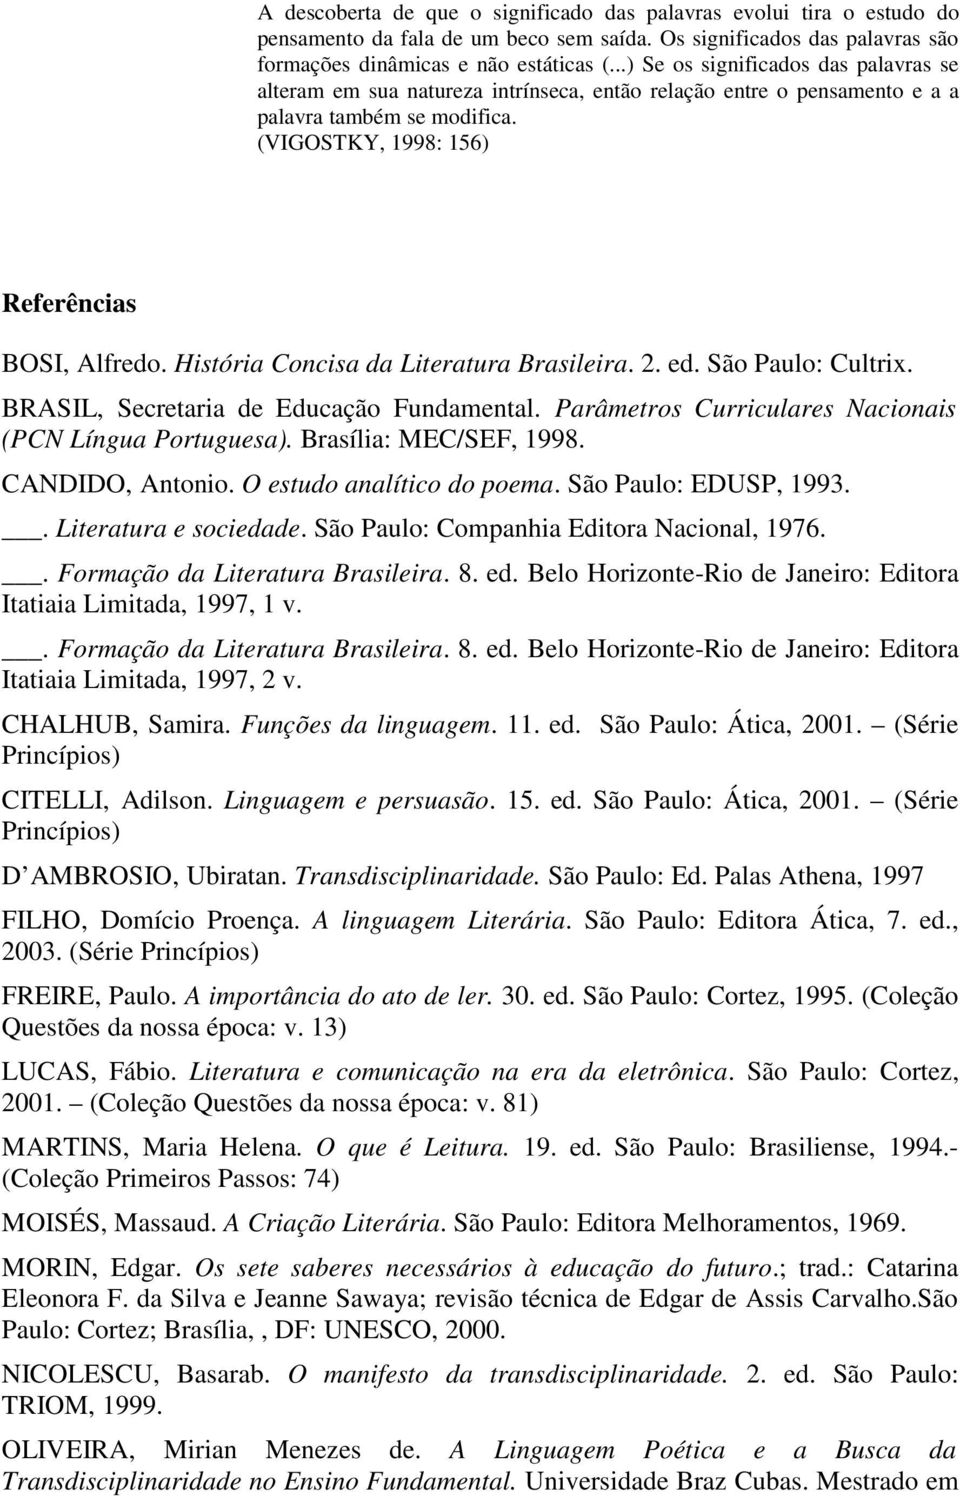 História Concisa da Literatura Brasileira. 2. ed. São Paulo: Cultrix. BRASIL, Secretaria de Educação Fundamental. Parâmetros Curriculares Nacionais (PCN Língua Portuguesa). Brasília: MEC/SEF, 1998.